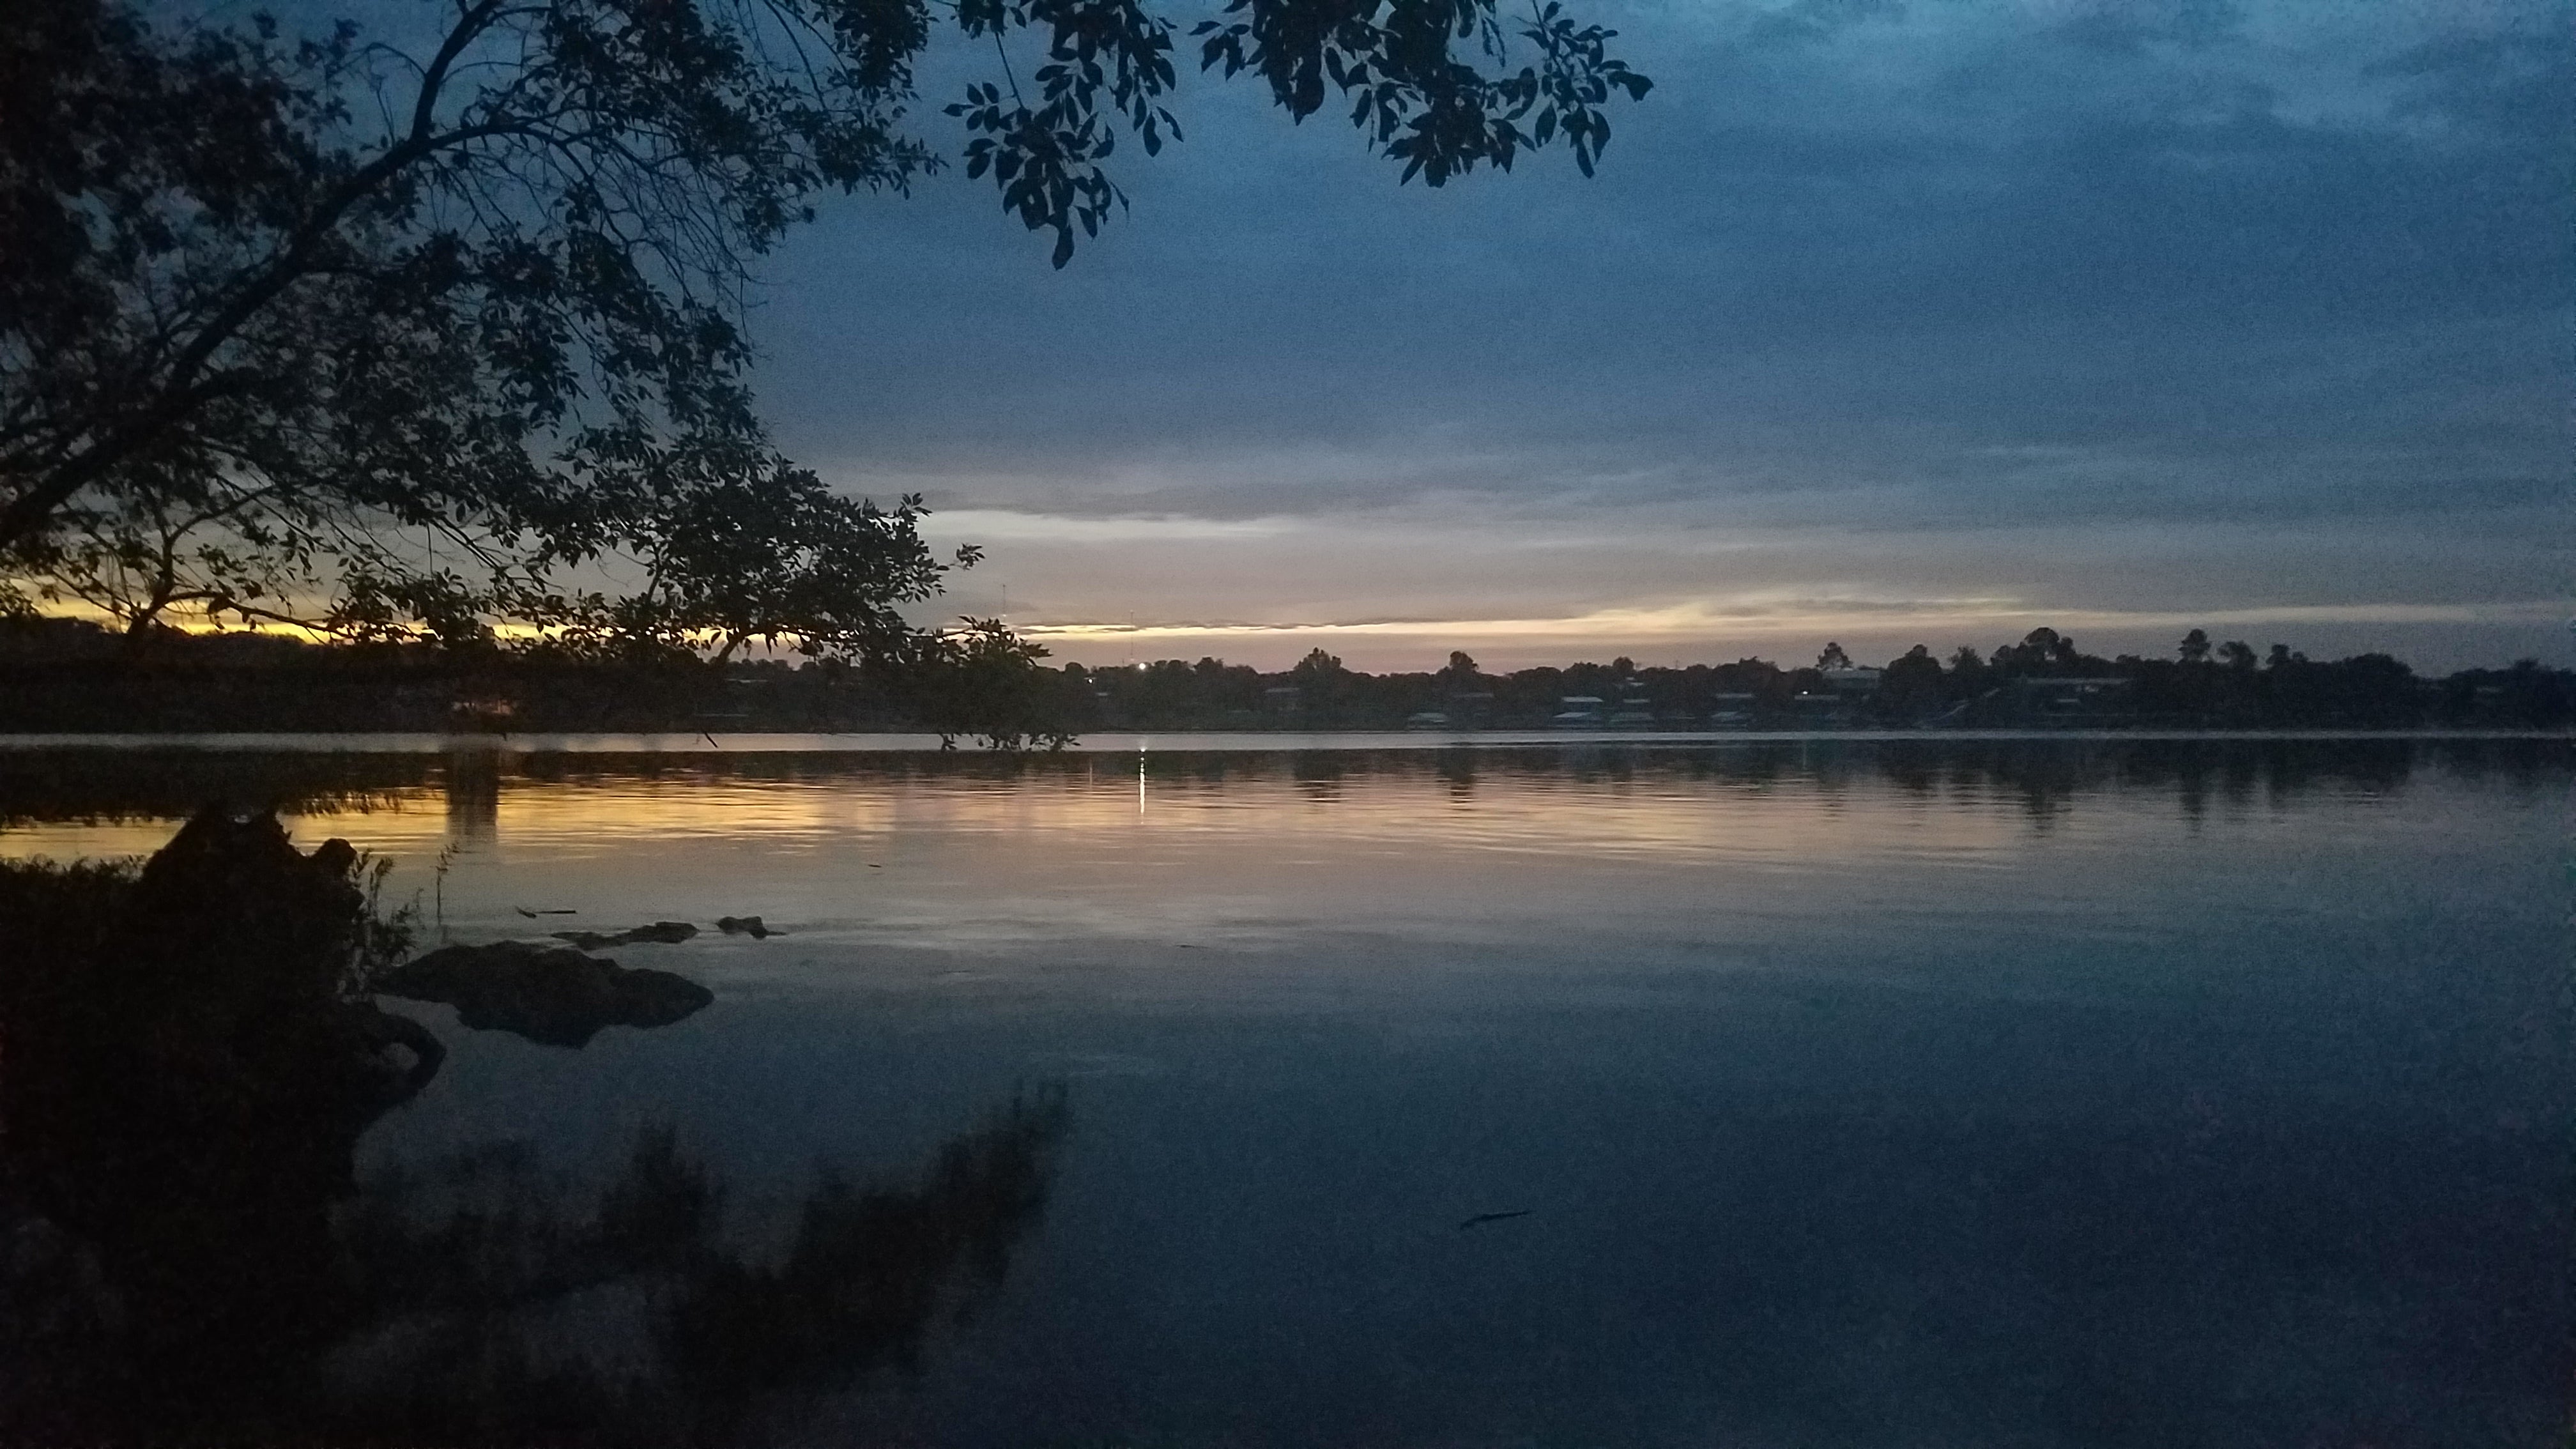 Sunset on Inks Lake